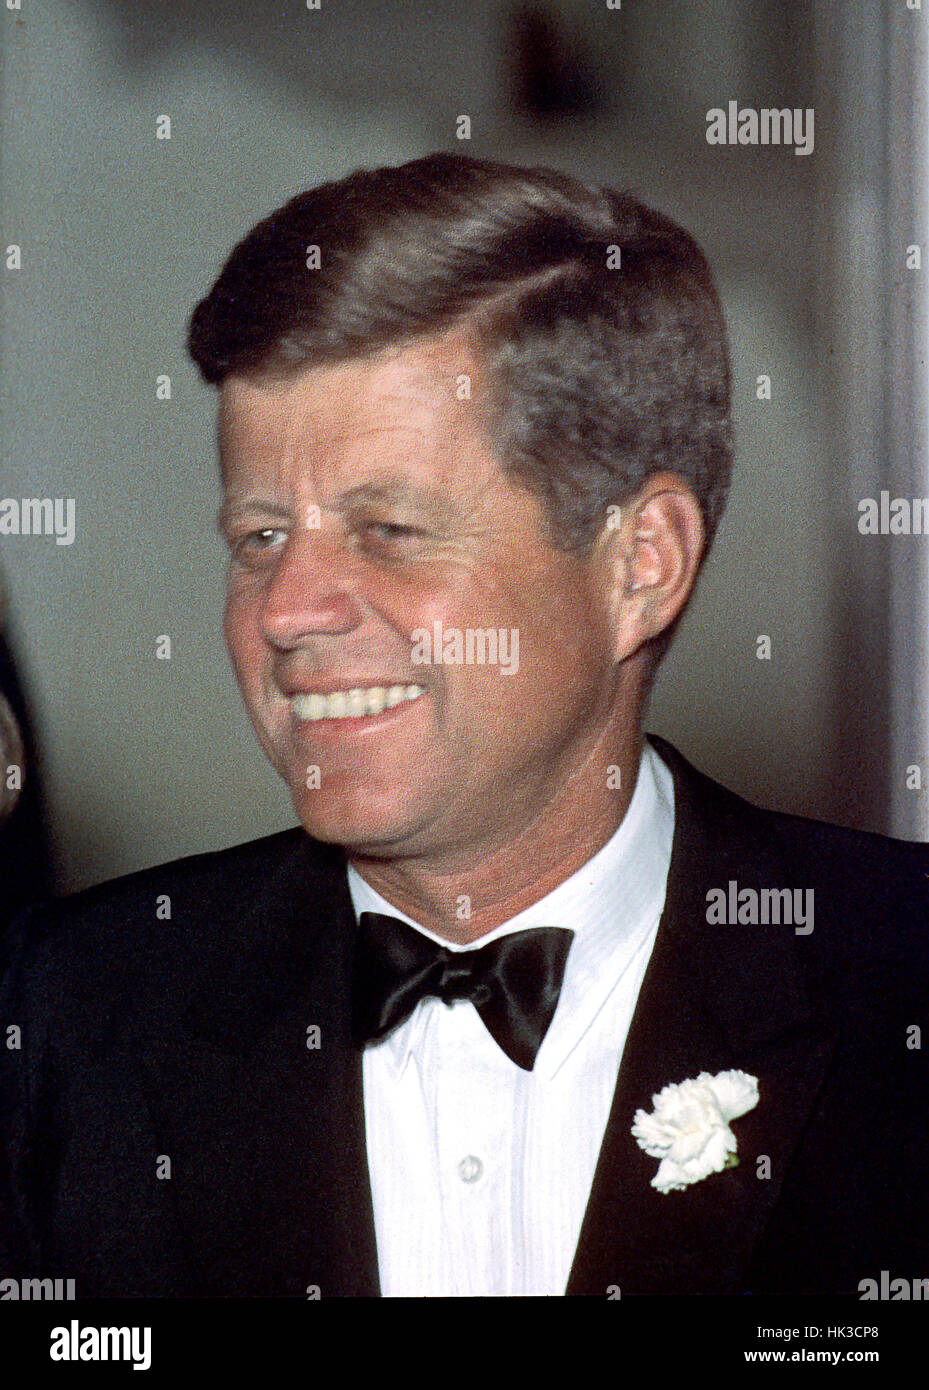 File non datata foto da 1963 del Presidente degli Stati Uniti John Fitzgerald Kennedy in corrispondenza di un evento formale alla Casa Bianca di Washington, D.C. .Credito: Arnie Sachs - CNP /MediaPunch Foto Stock